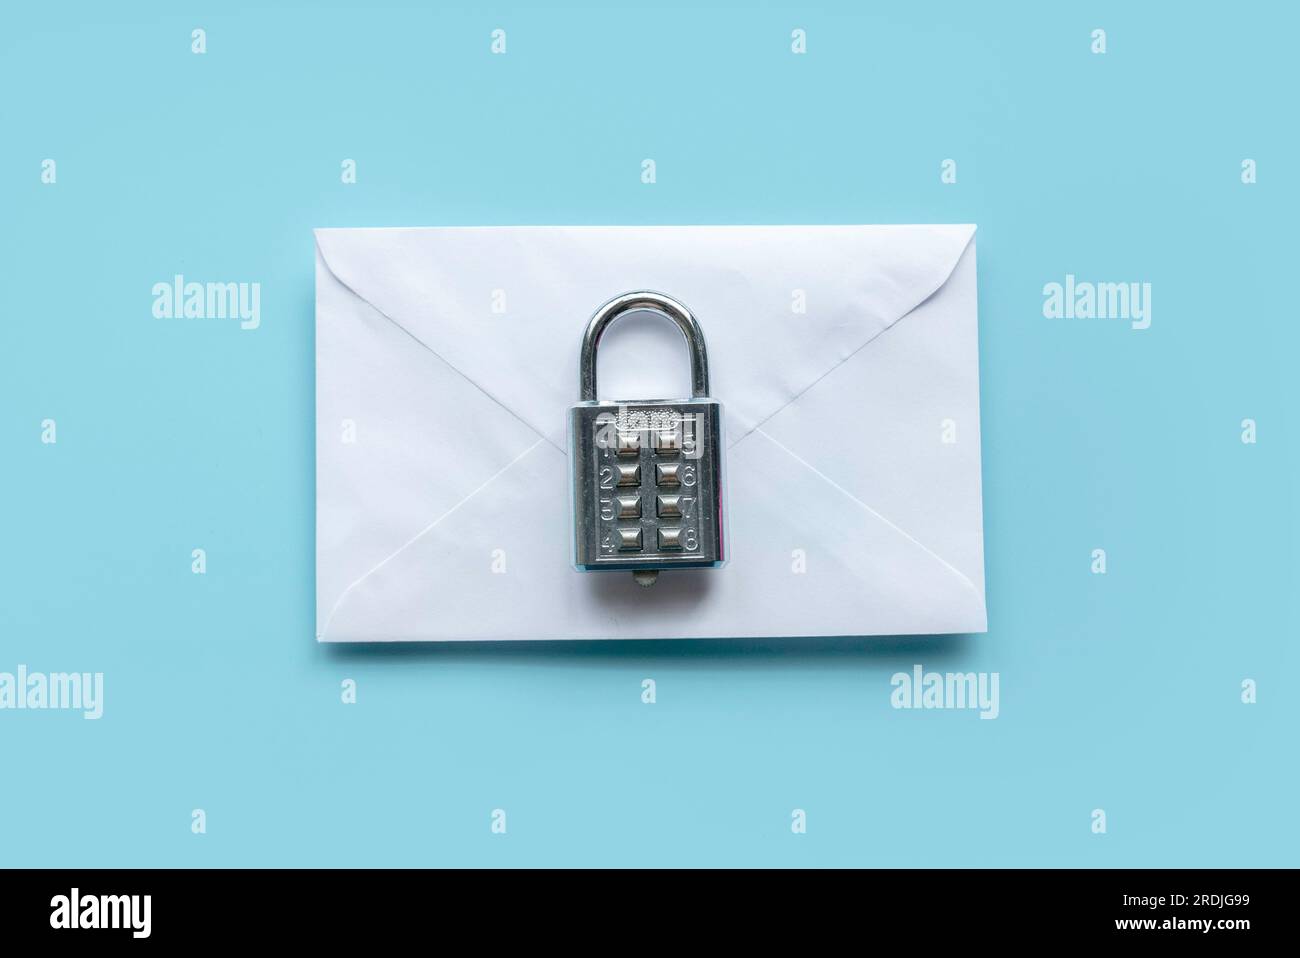 Concept de sécurité email, communication sécurisée, secret et confidentiel. Cadenas au-dessus de l'envolope blanche sur un fond bleu. Banque D'Images